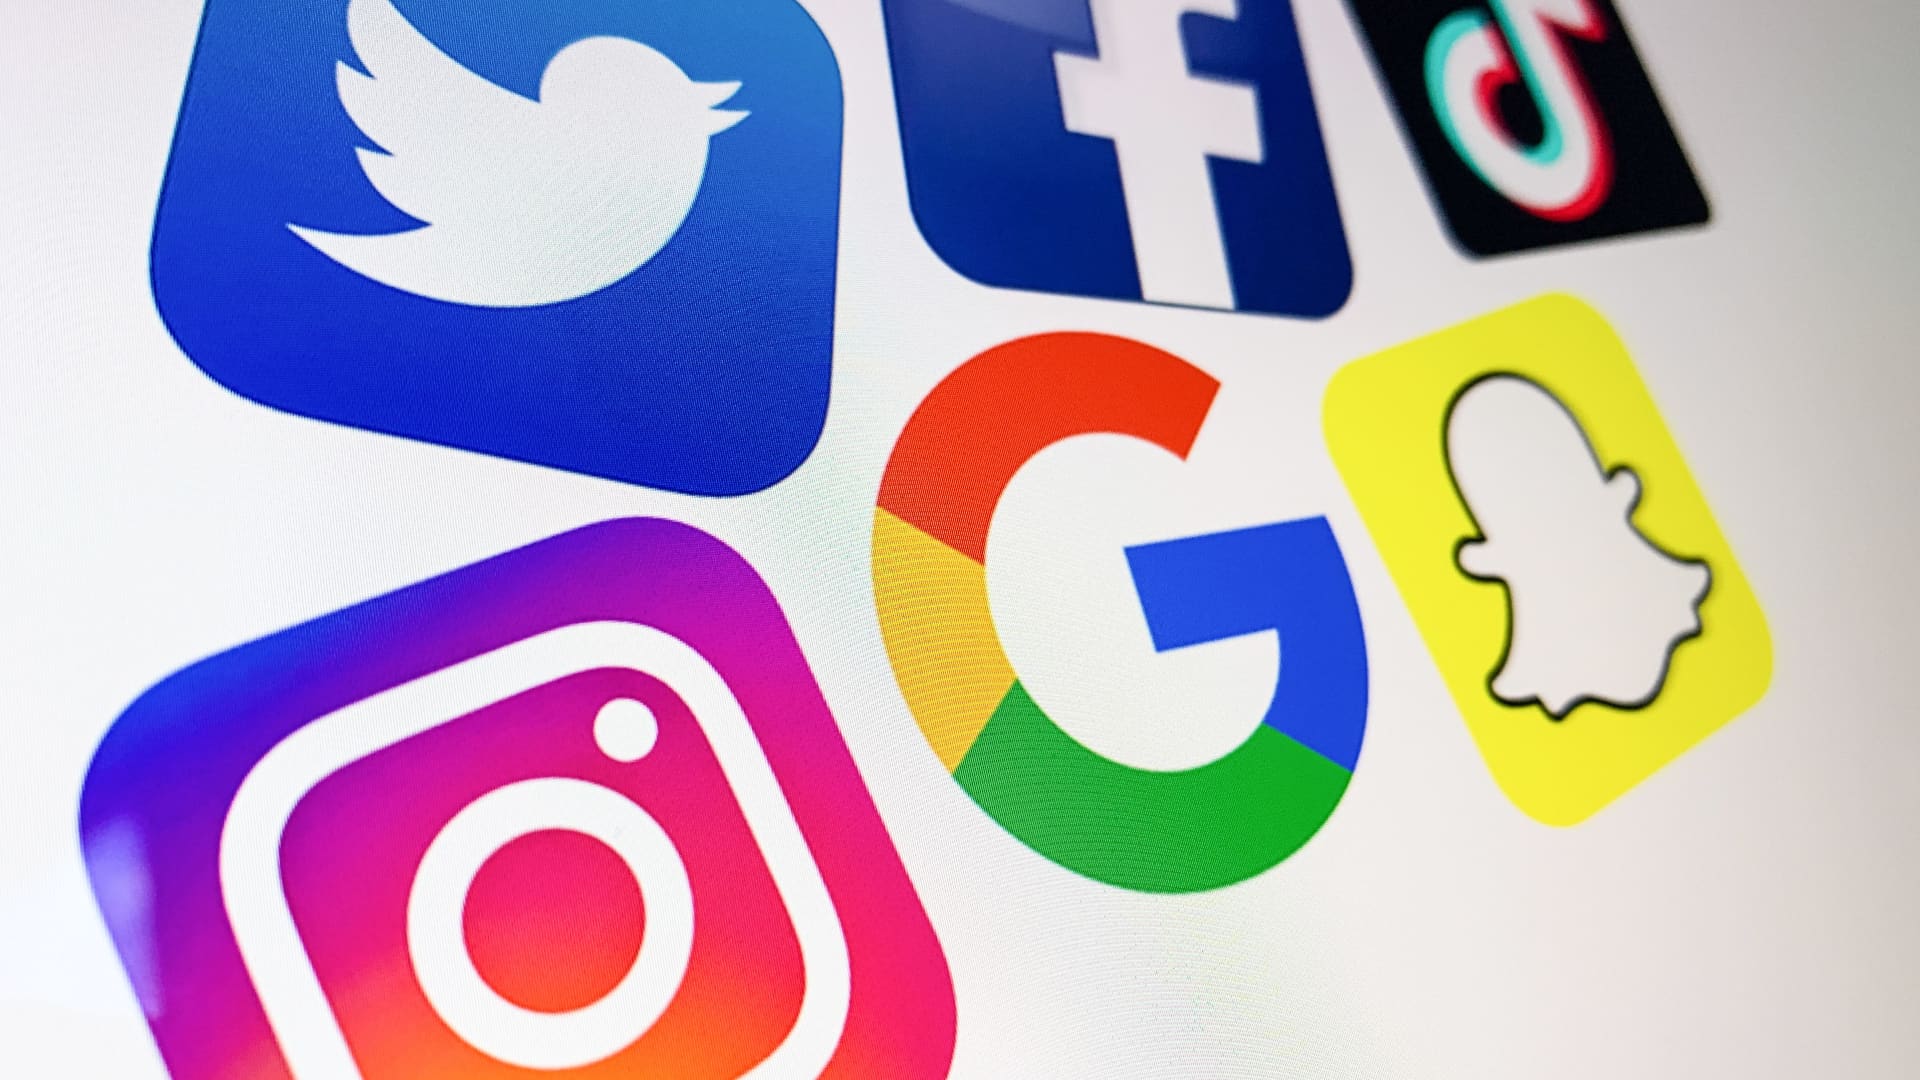 France/ Rencontre entre les plateformes( Twitter, Snapchat, Tiktok etc) et le gouvernement: Va-t-on vers des mesures restrictives des réseaux sociaux à l'instar du Sénégal ?